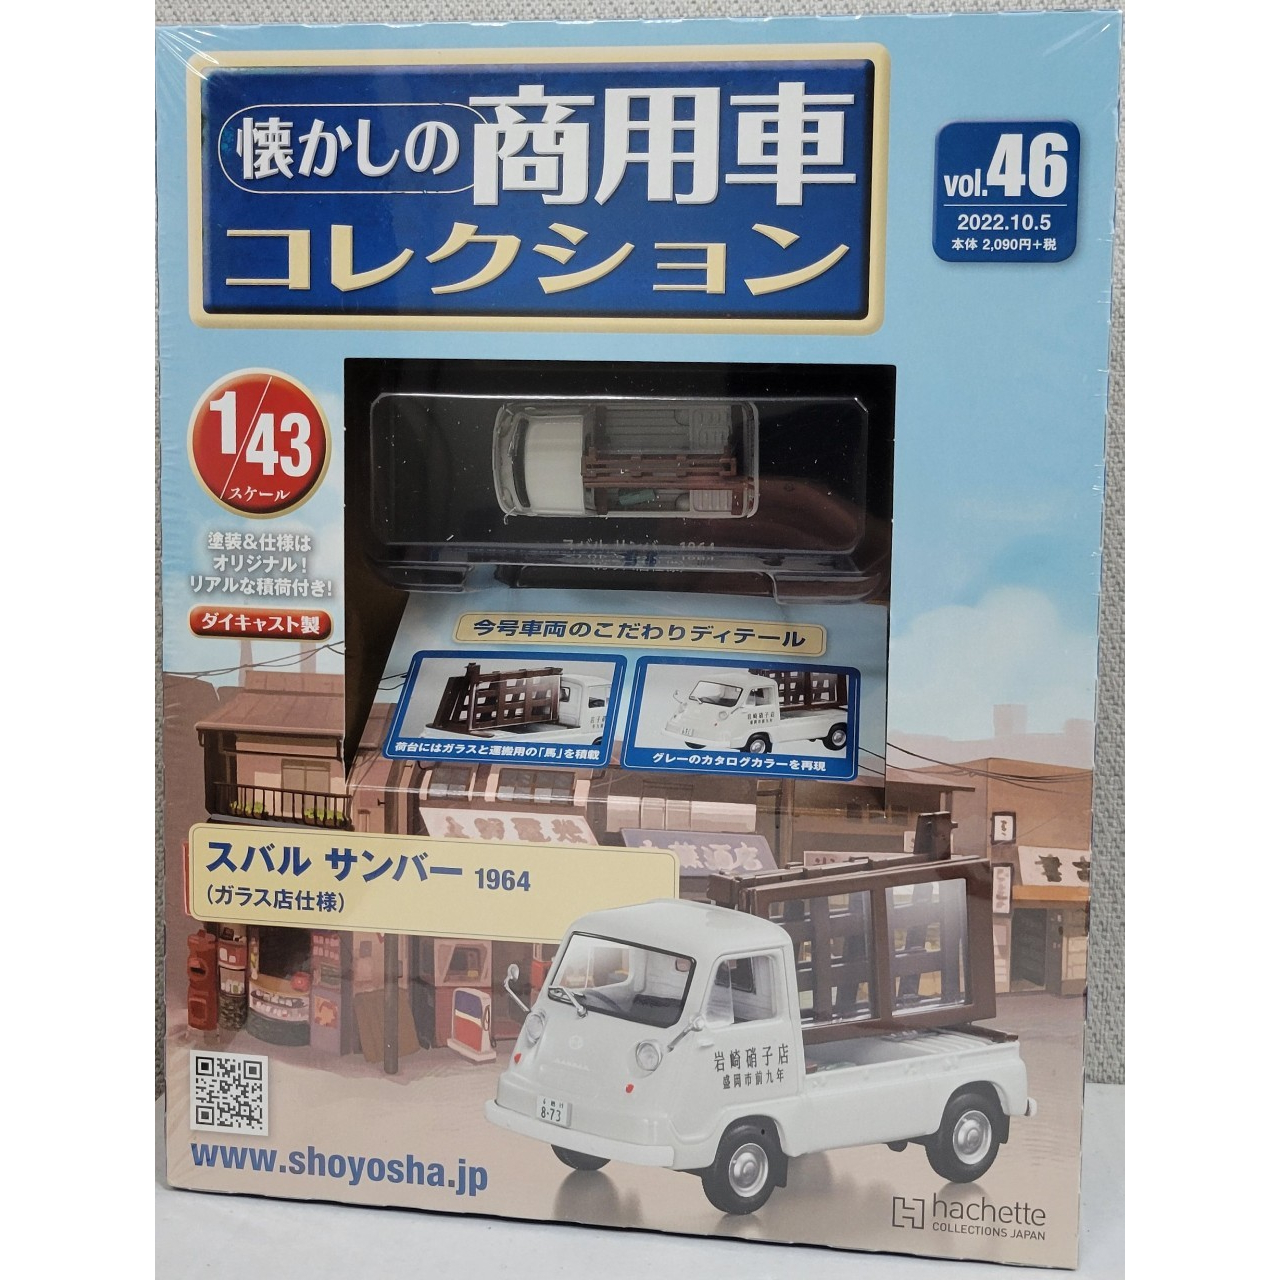 懷舊商用車模型收藏 NO.46_隨書附1/43的Subaru Sambar玻璃店小貨車_全新